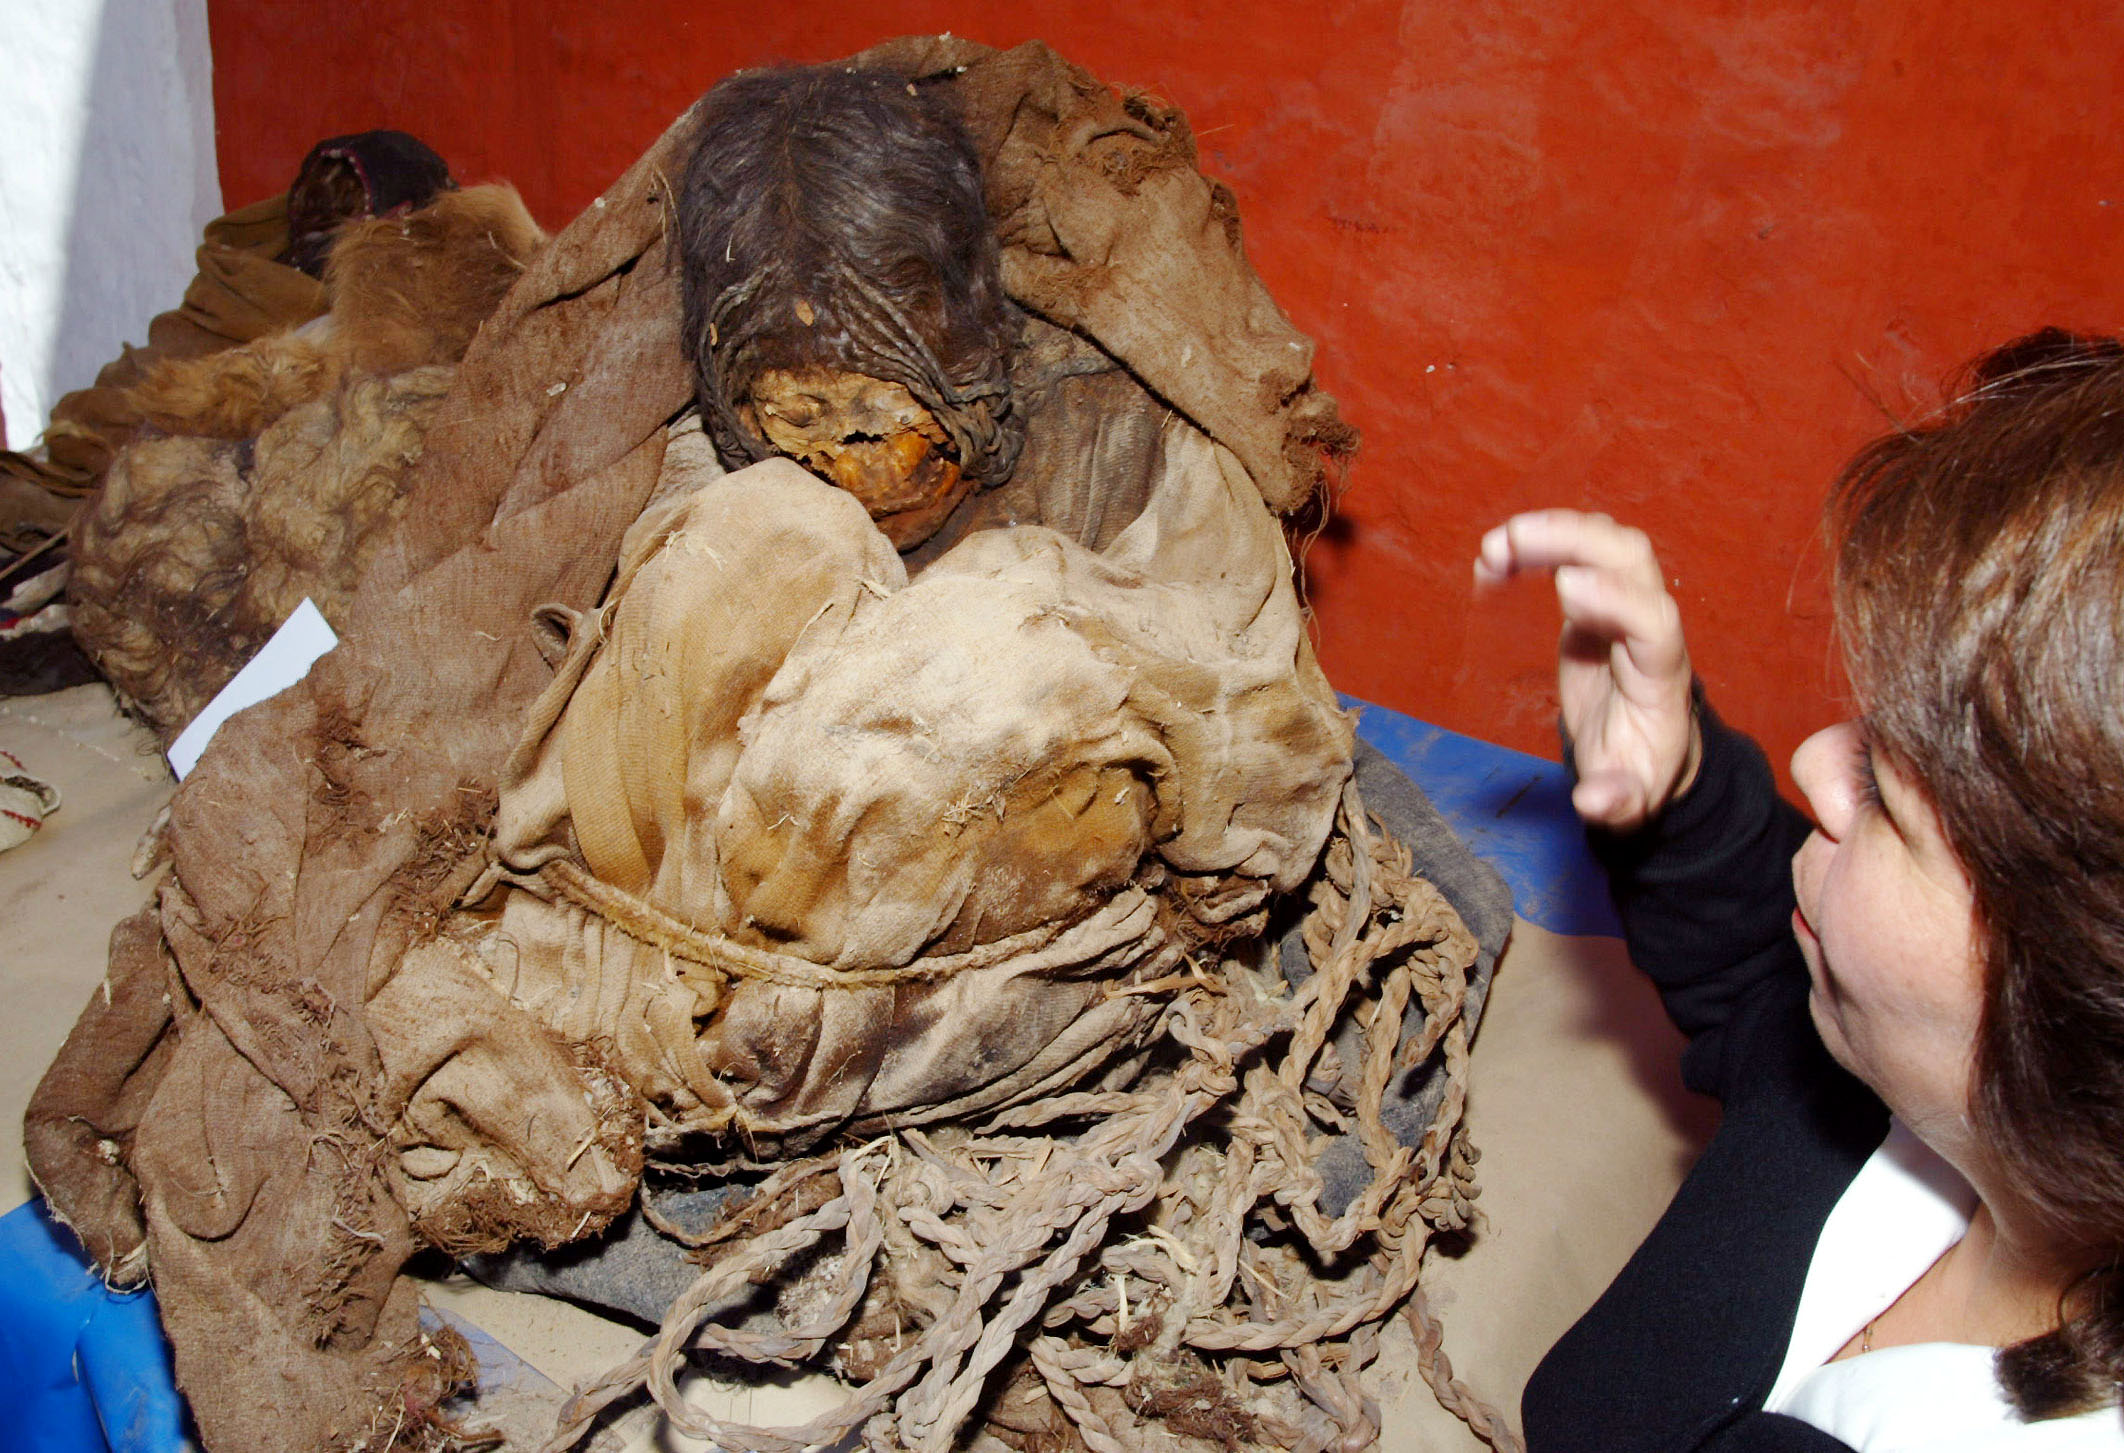 Peruvian mummies predate the Incas